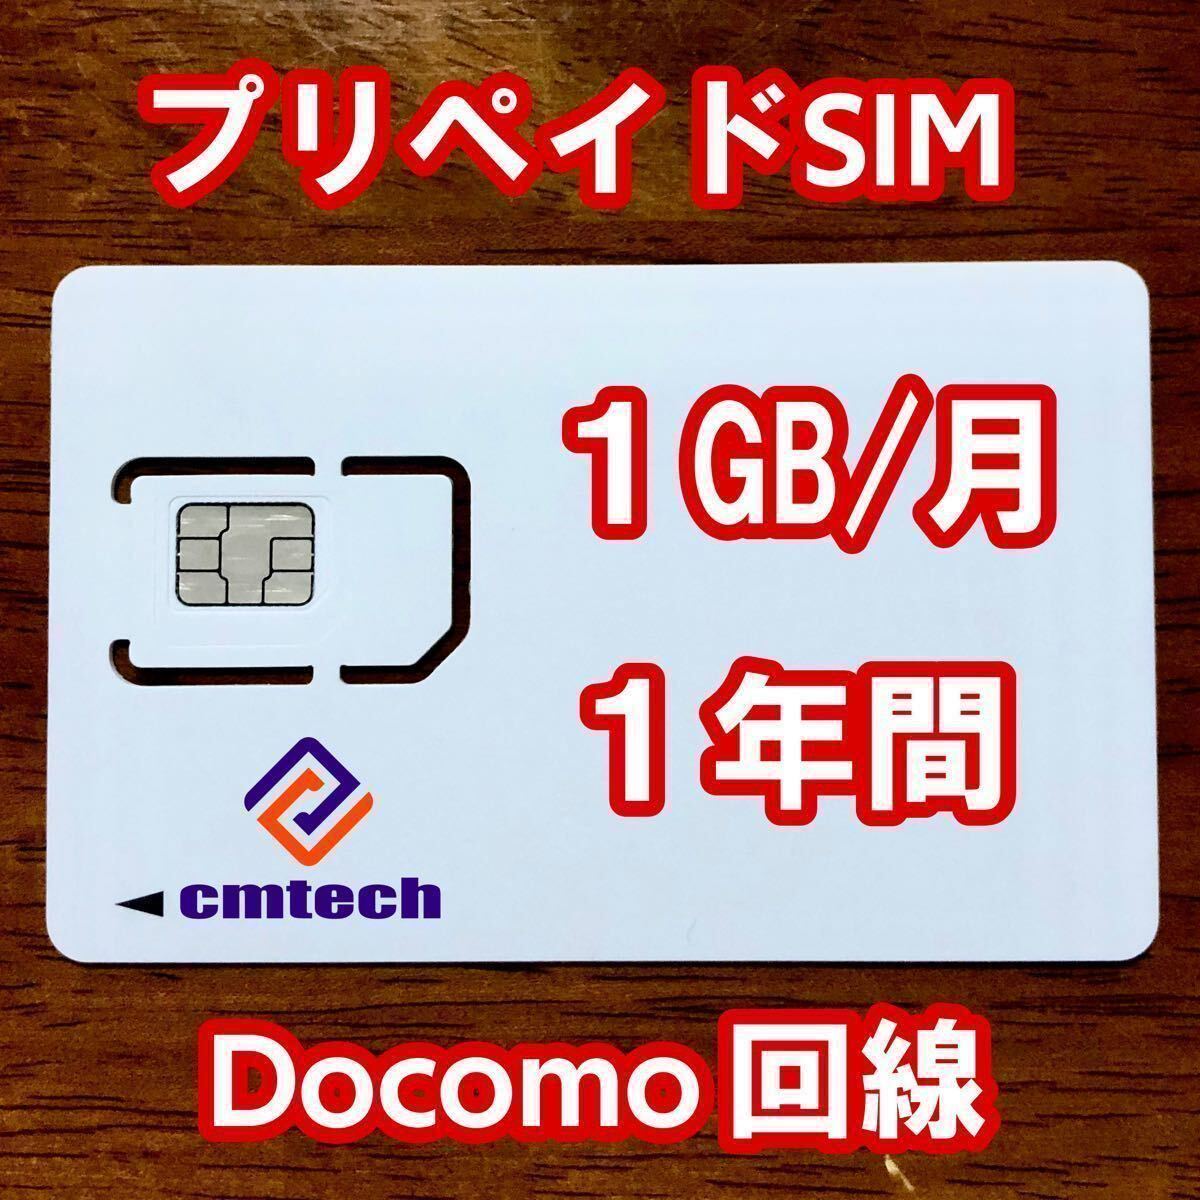 Docomo回線 プリペイドsim 1GB/月1年間有効 データ通信simカード111の画像1